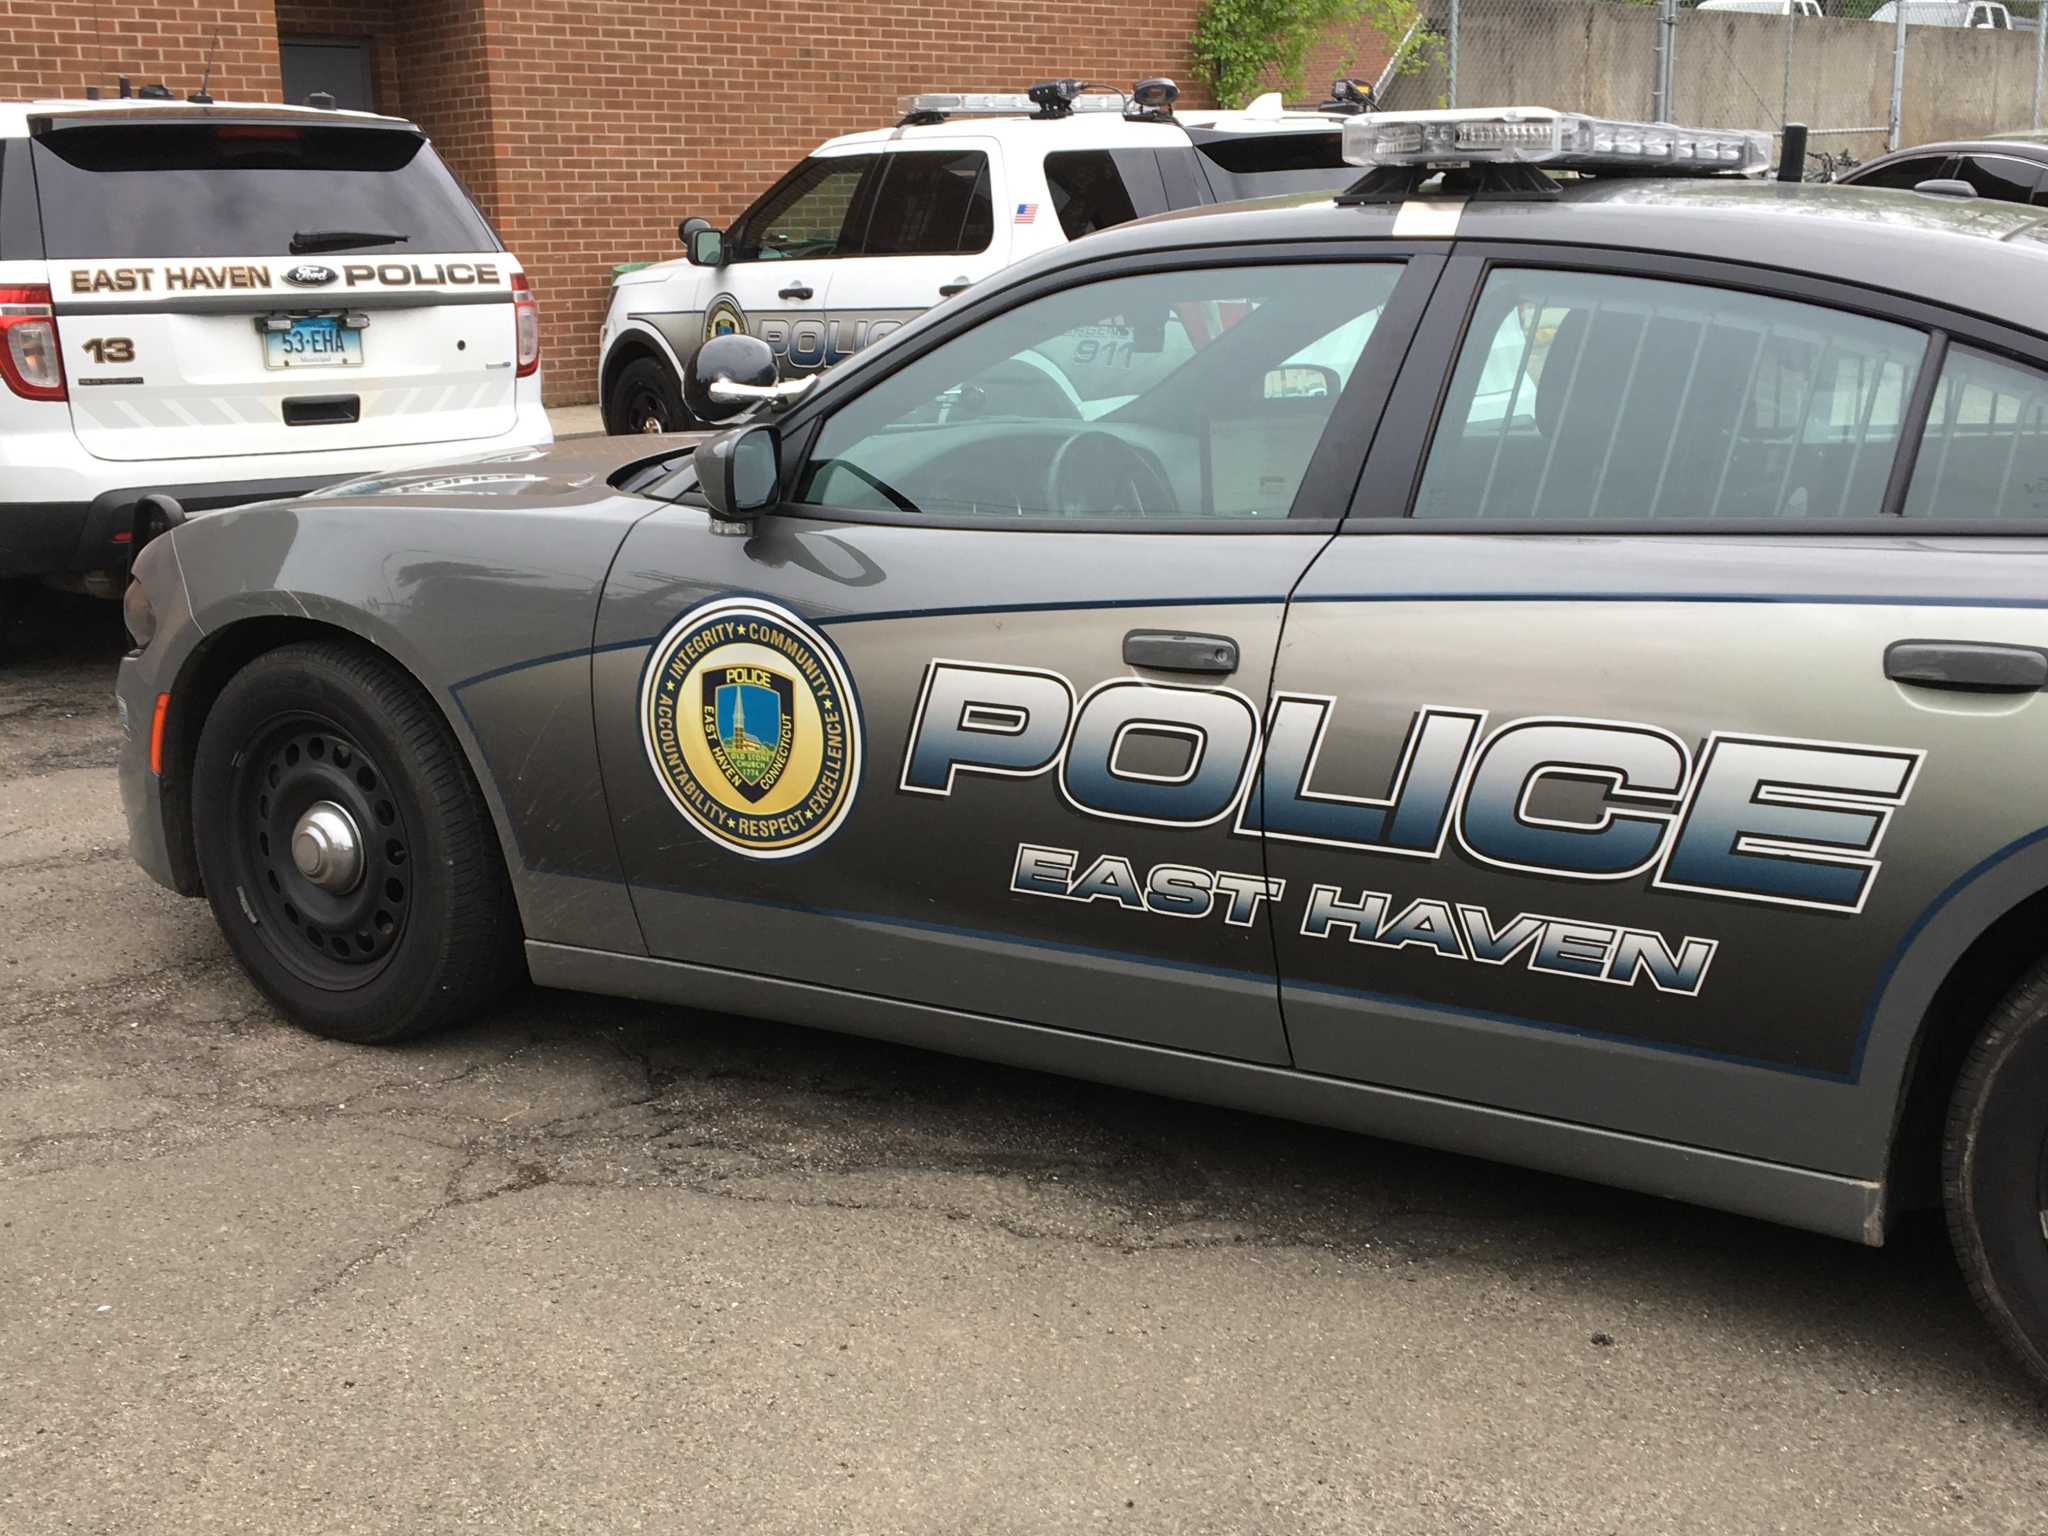 Motorist injured, faces charges after East Haven crash